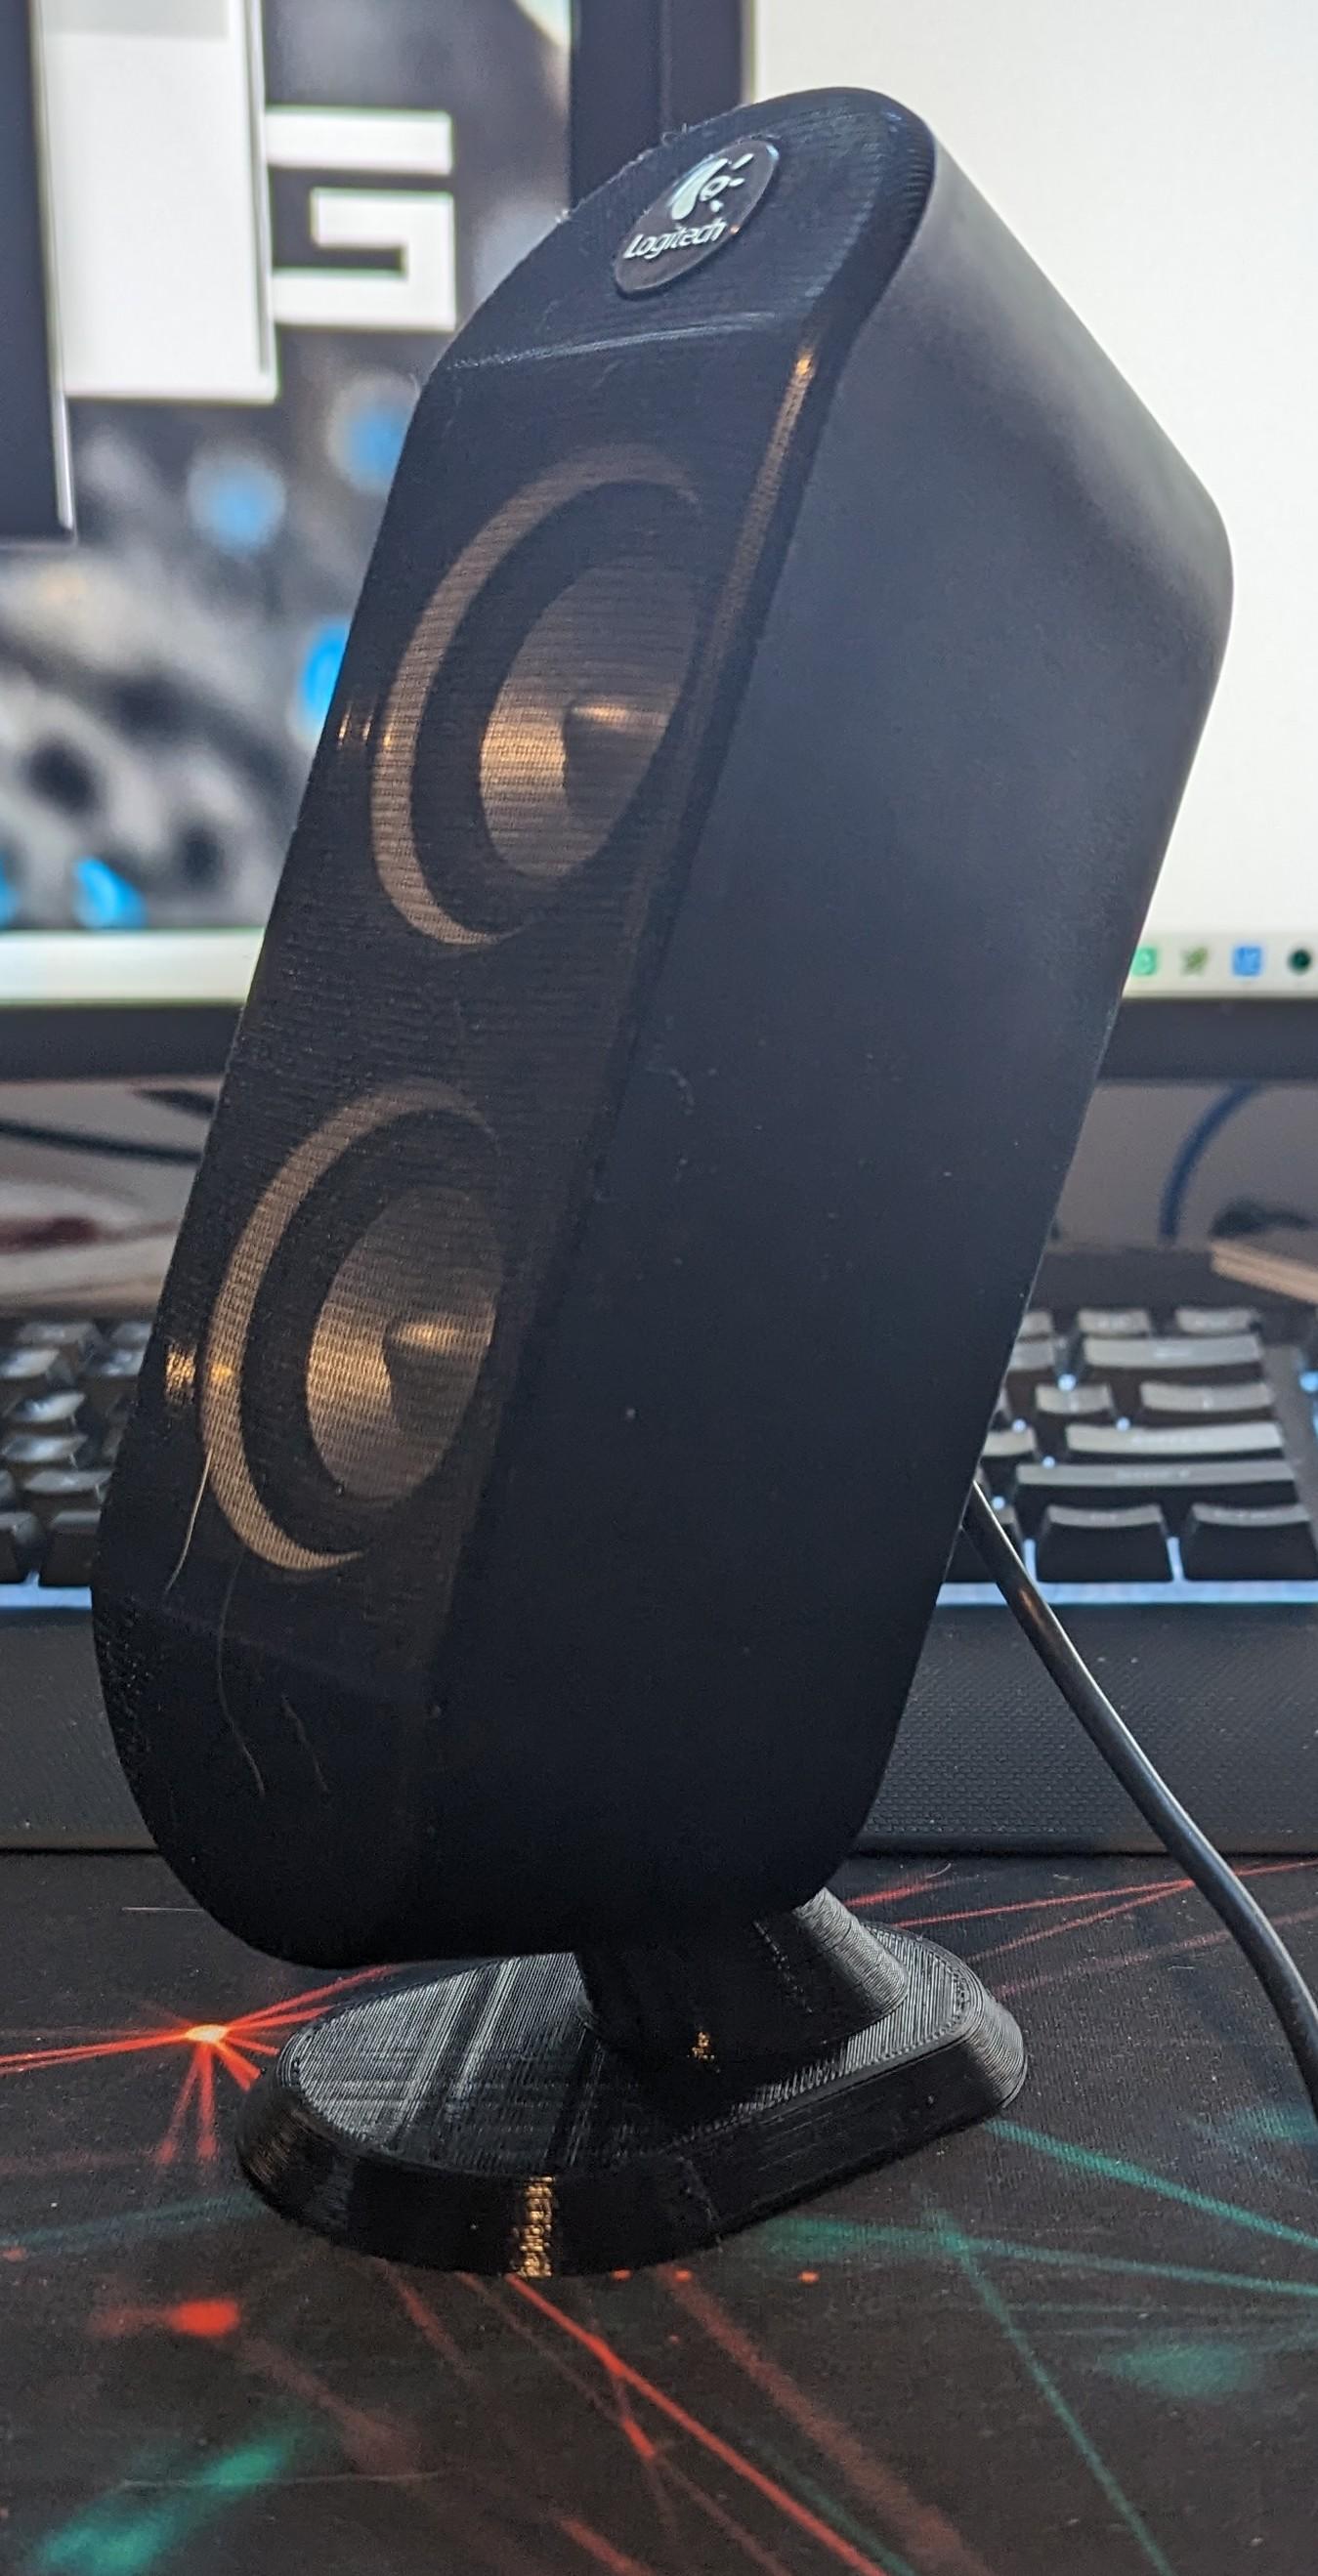 Speaker Mount for Logitech X-230 and X-530 Speakers 3d model